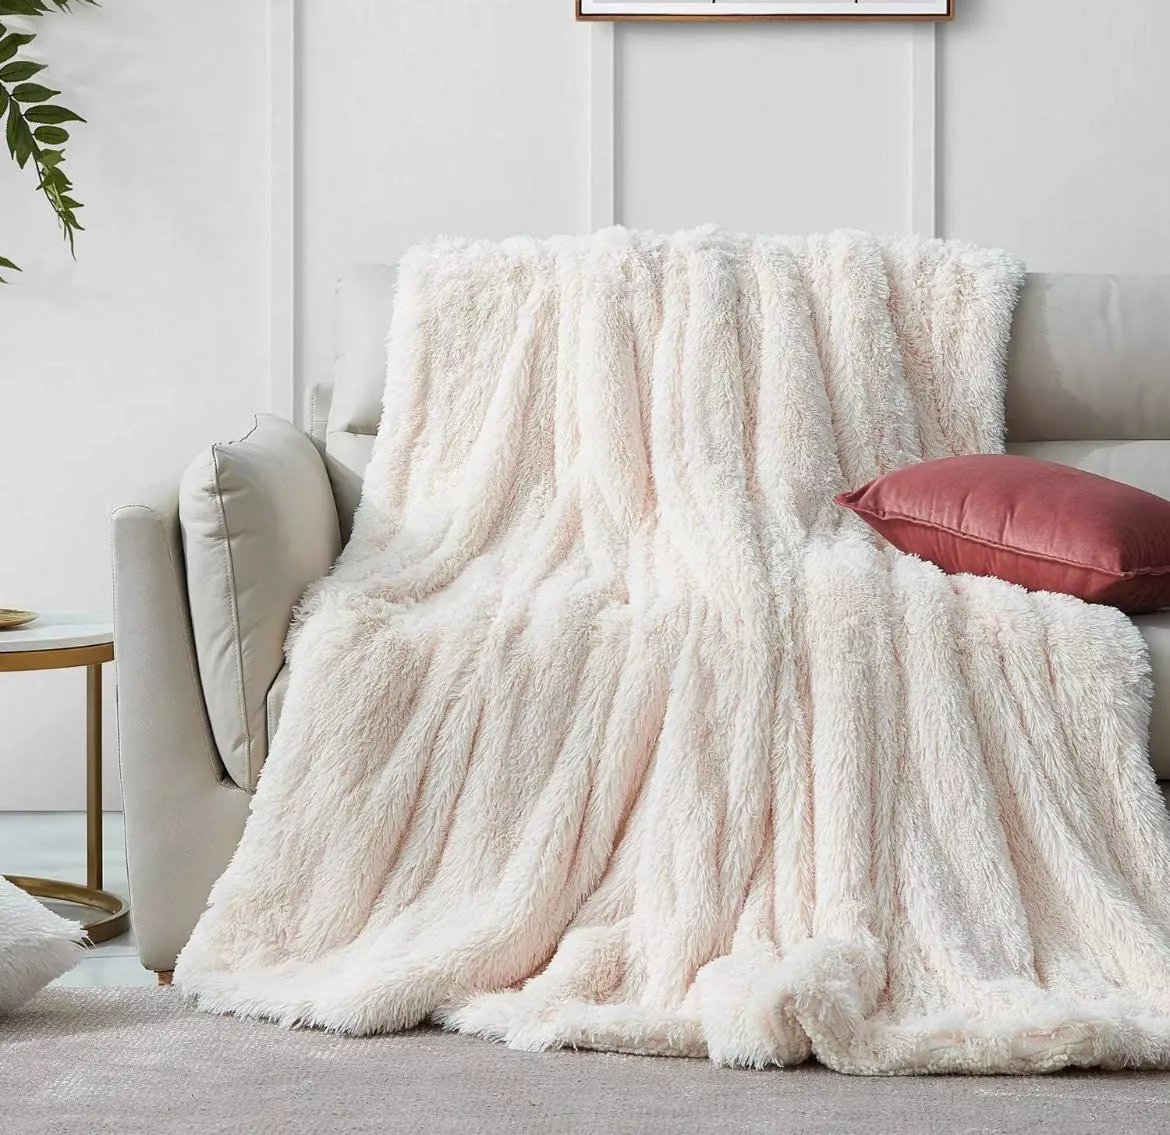 Tercera imagen para búsqueda de mantas para sofa